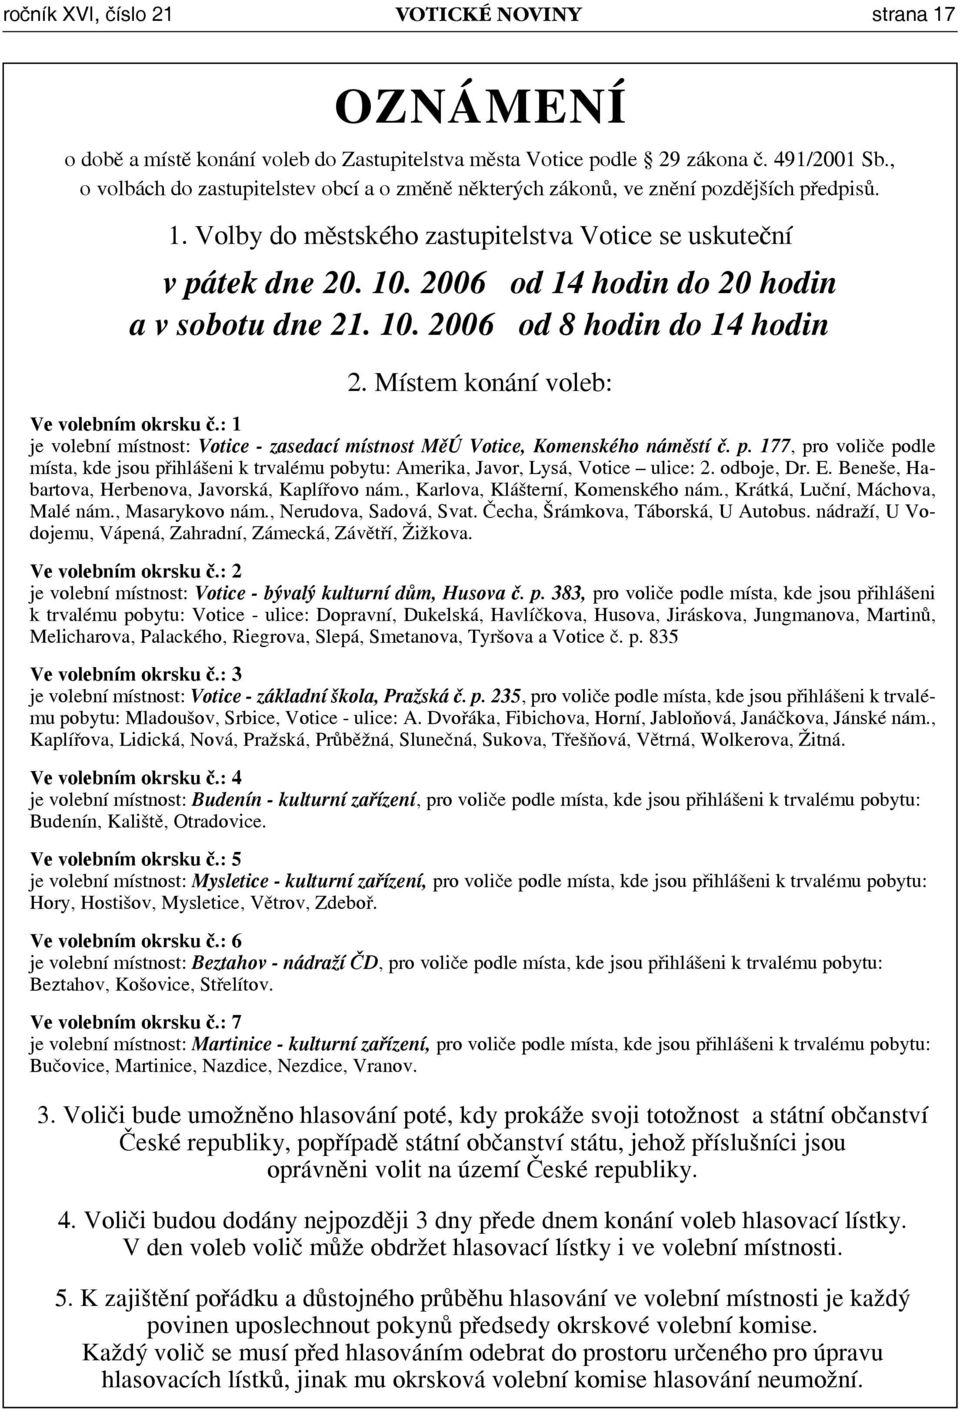 ROČNÍK XVI CENA 6,- Kč ČÍSLO 21/2006 ČTRNÁCTIDENÍK PRO VOTICKO. Komunální  volby rozpis volebních okrsků - PDF Free Download